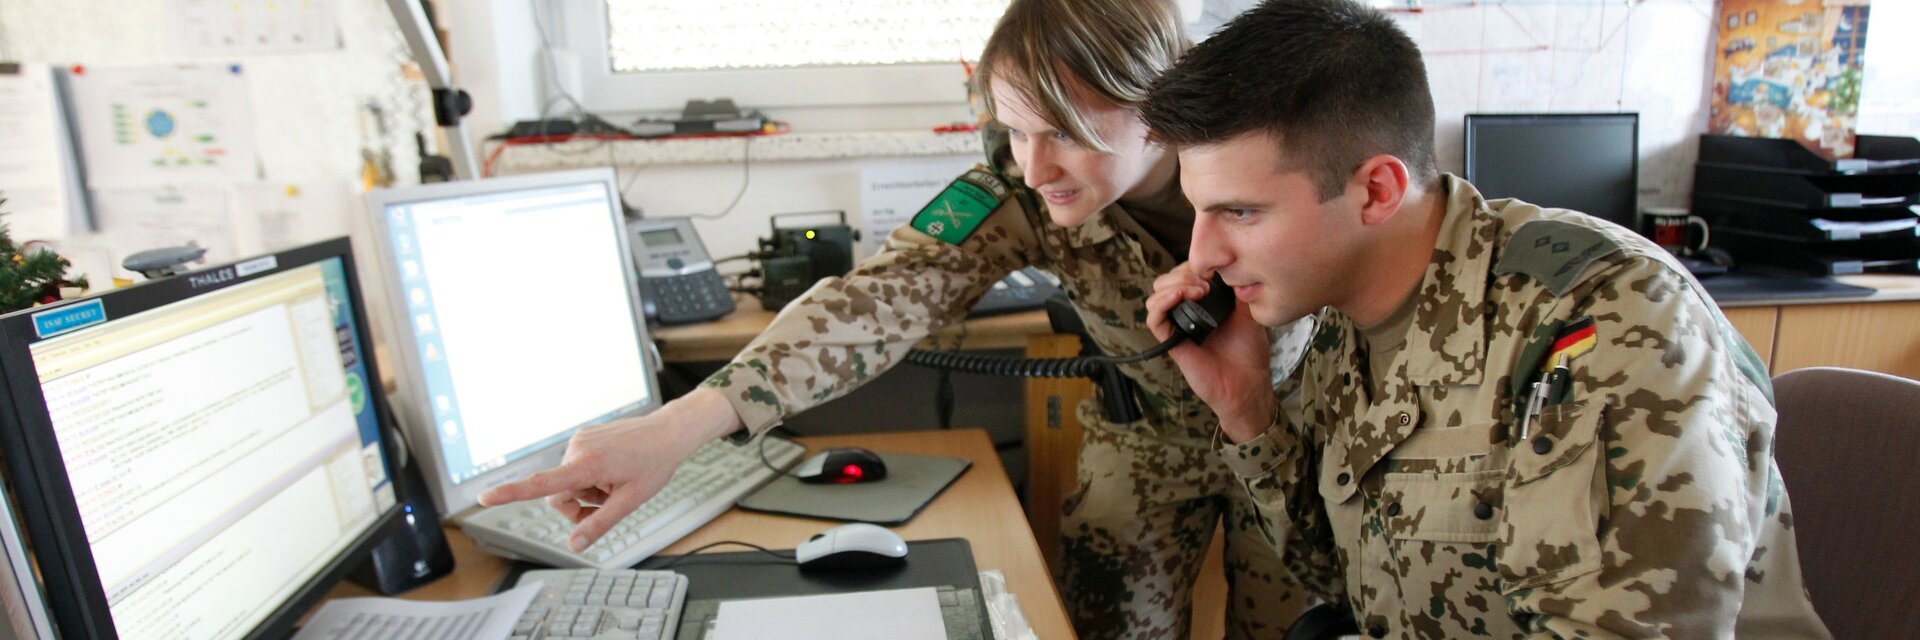 Ingenieure in Uniform besprechen sich am Schreibtisch vor zwei Monitoren